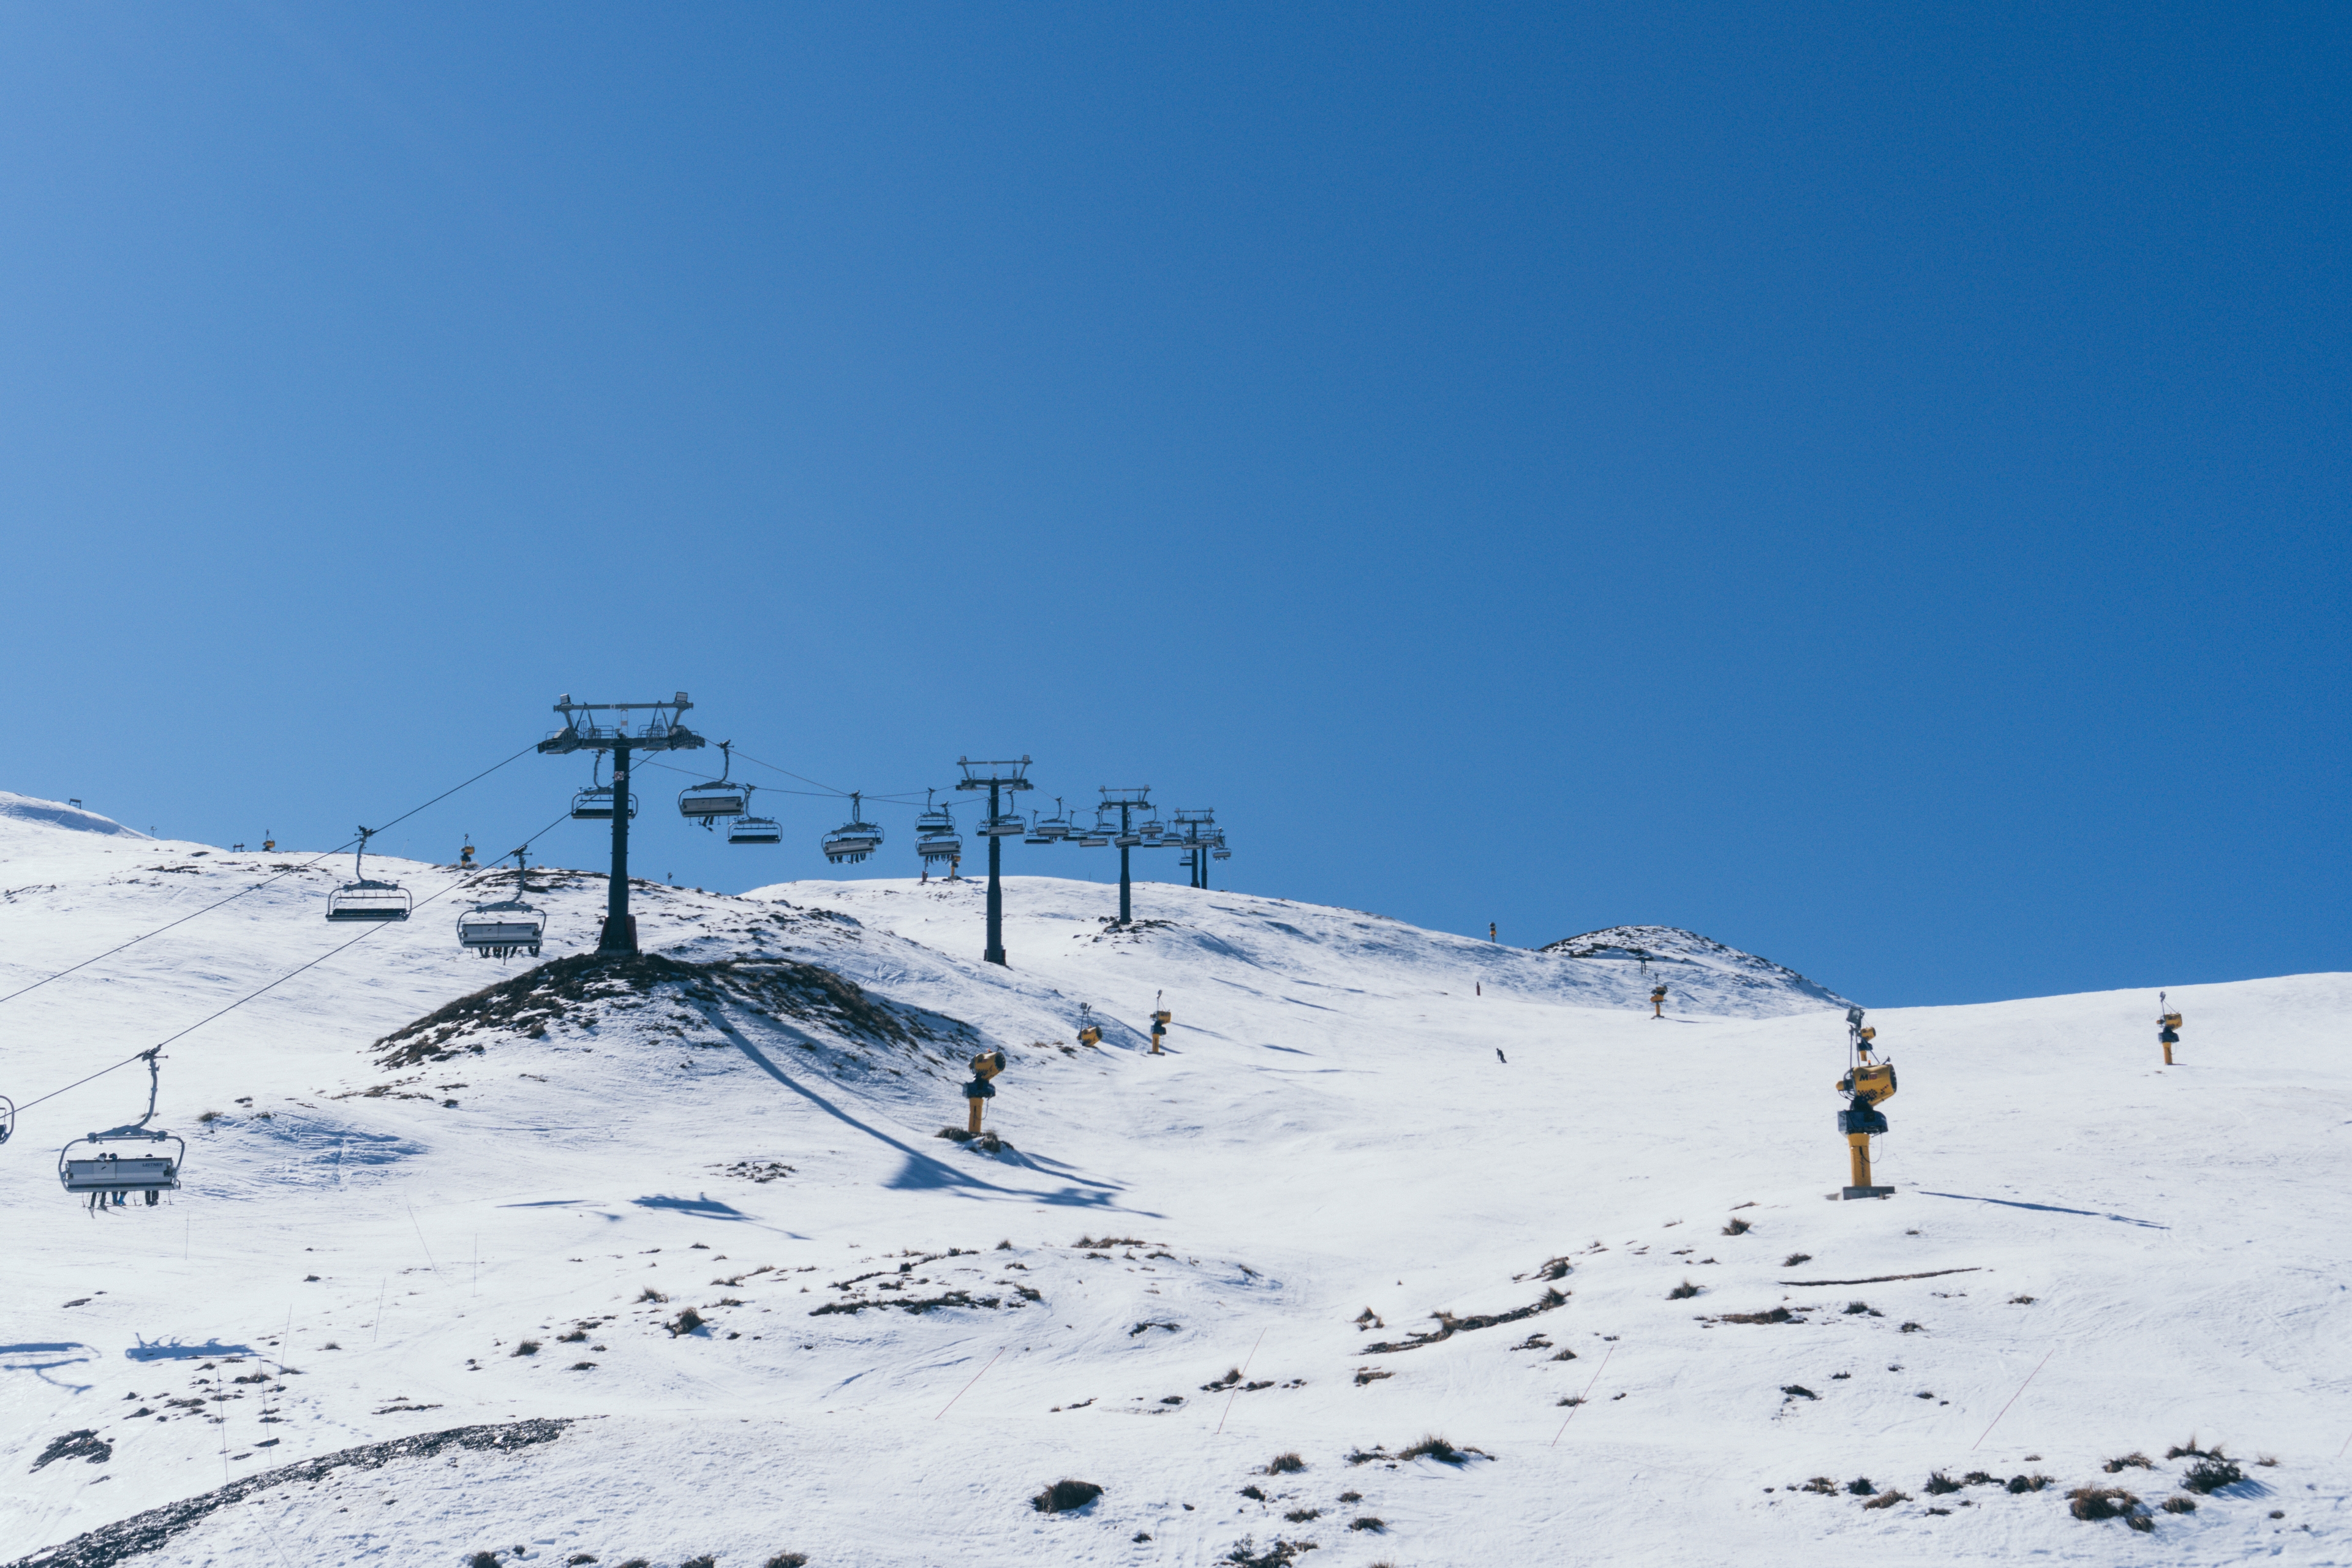 Spring New Zealand Snow Mountains Ski Resort Queenstown 3840x2560